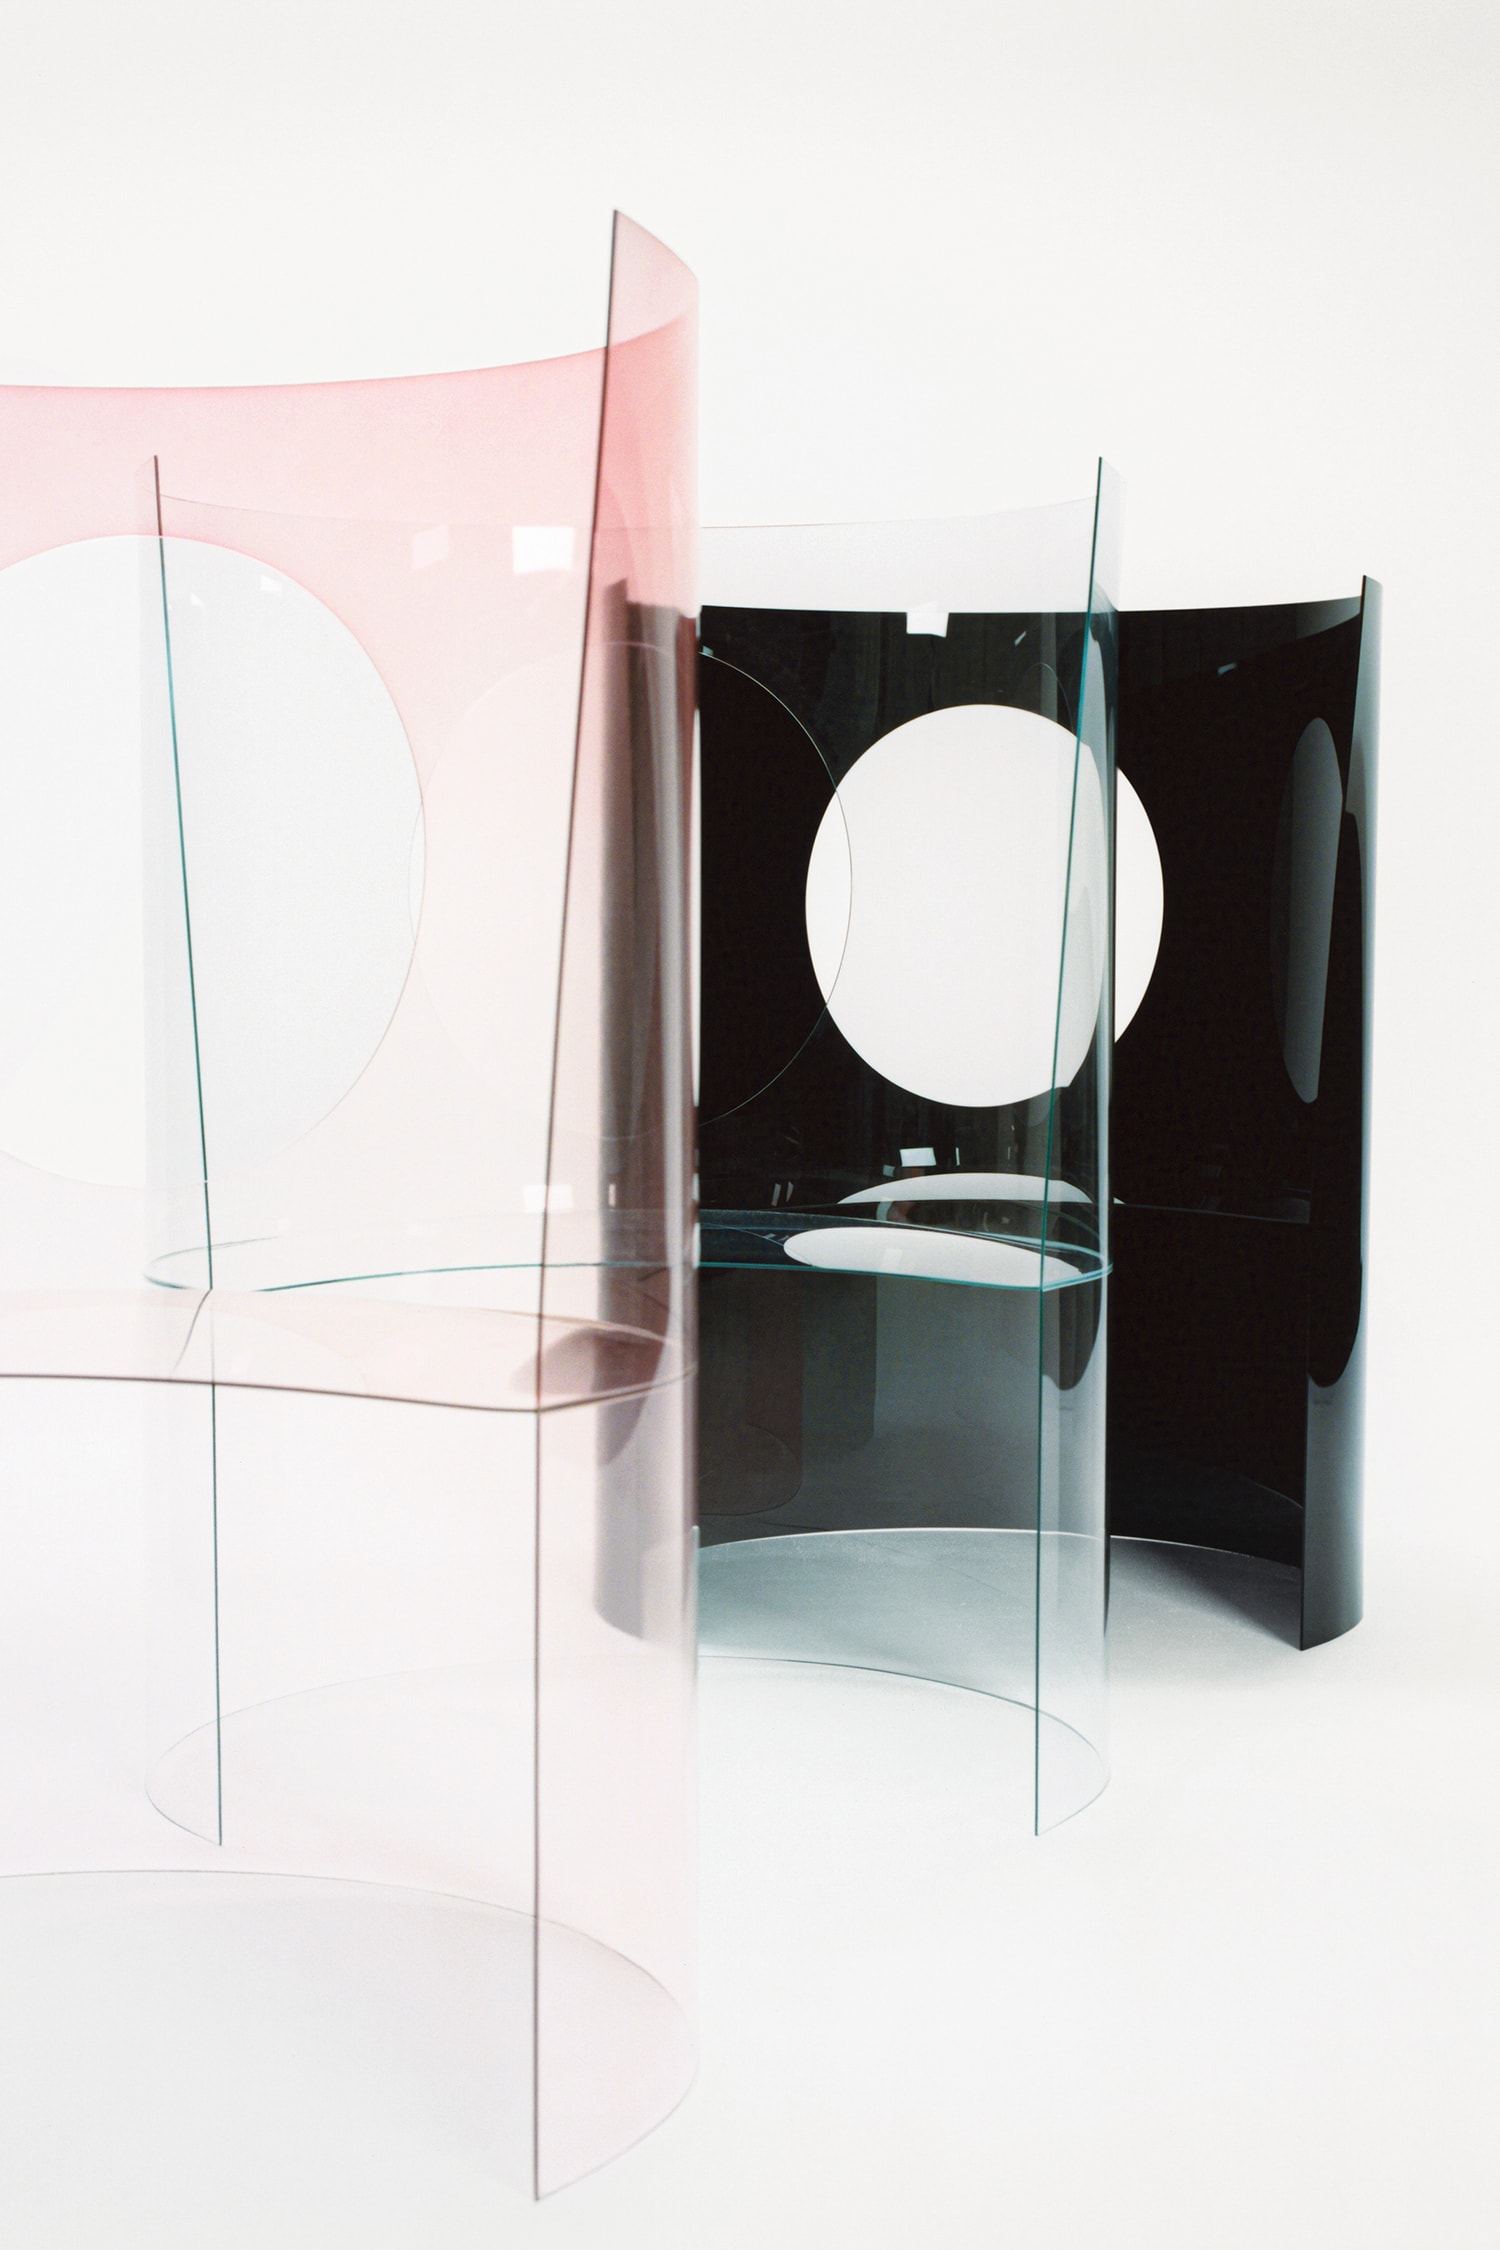 Dior Maison 攜手十七位藝術家重釋經典橢圓背椅